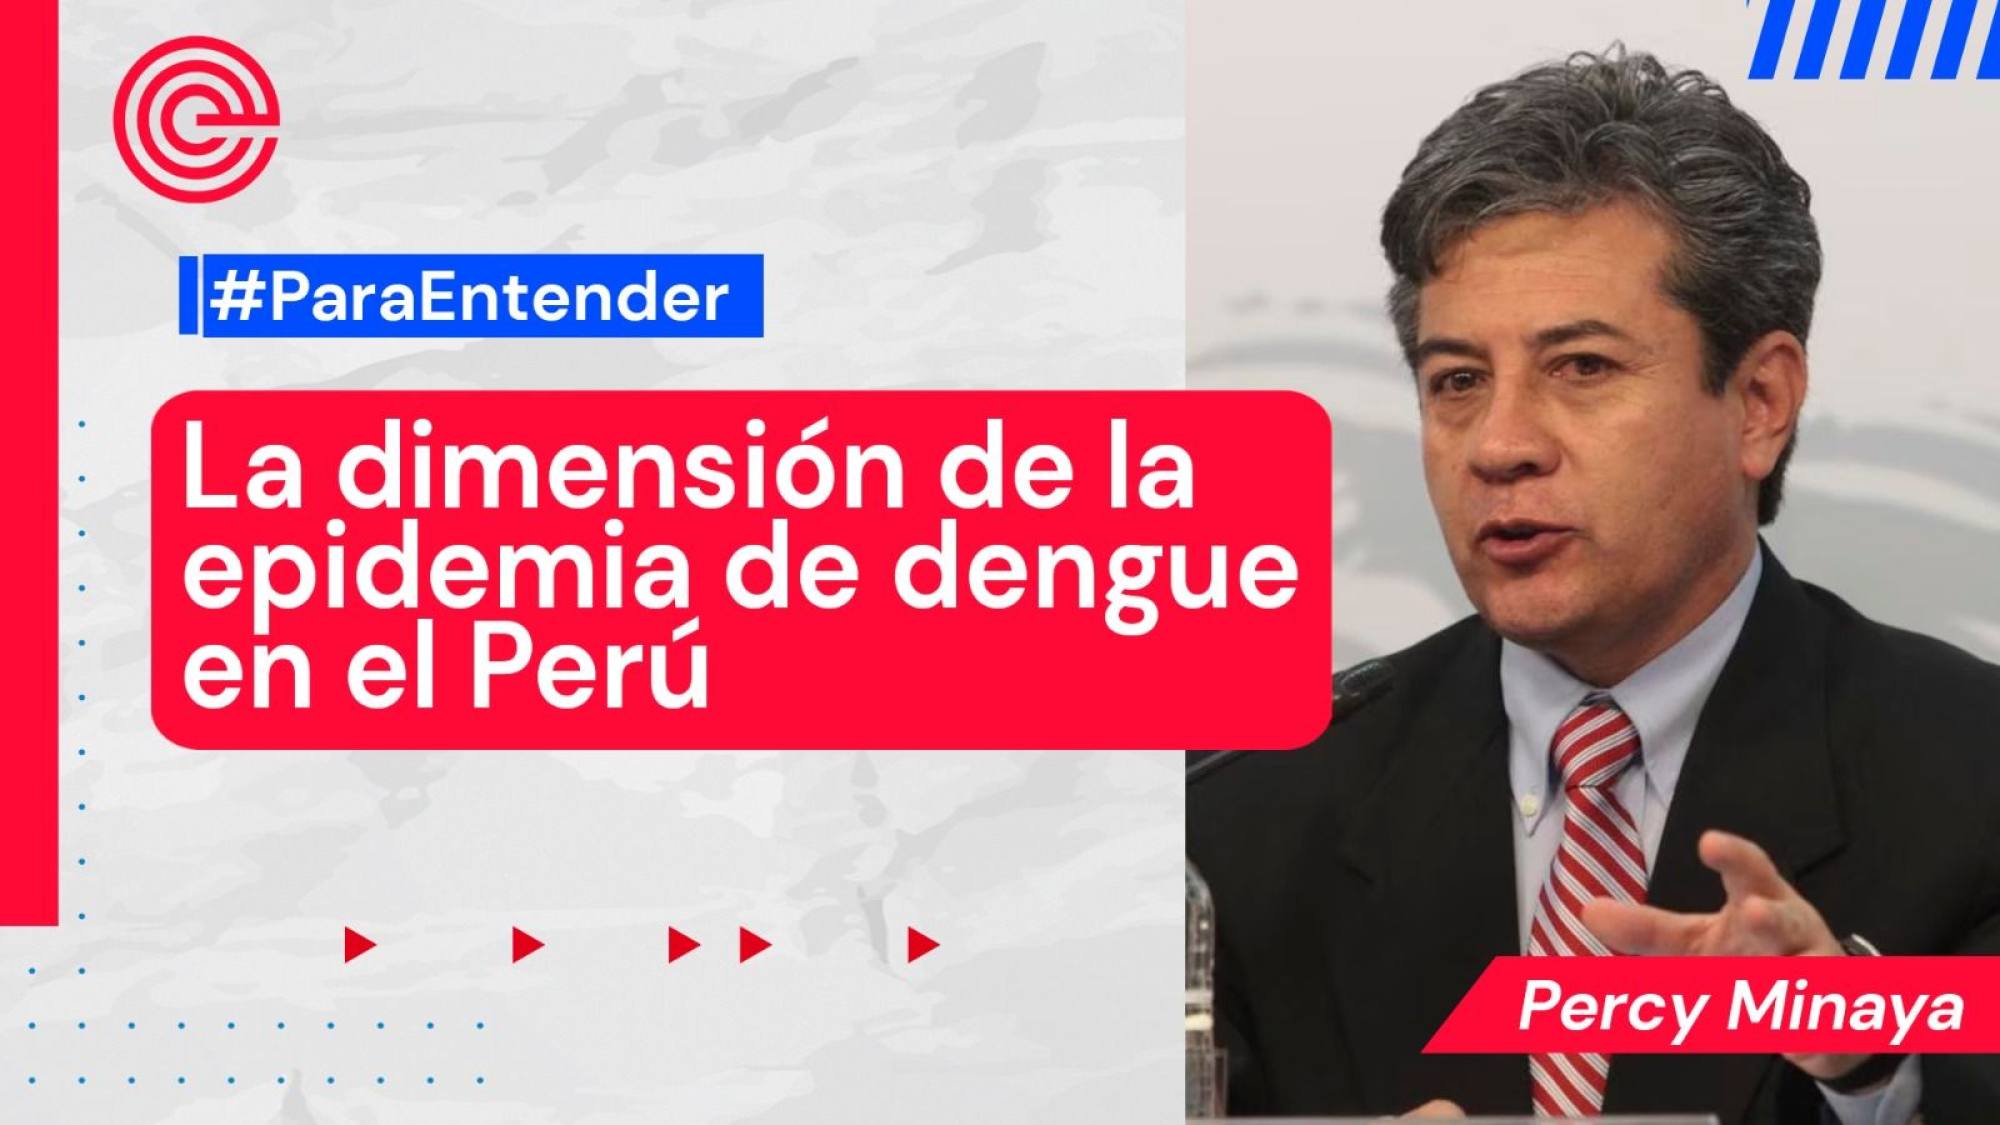 La dimensión de la epidemia de dengue en el Perú, Epicentro TV